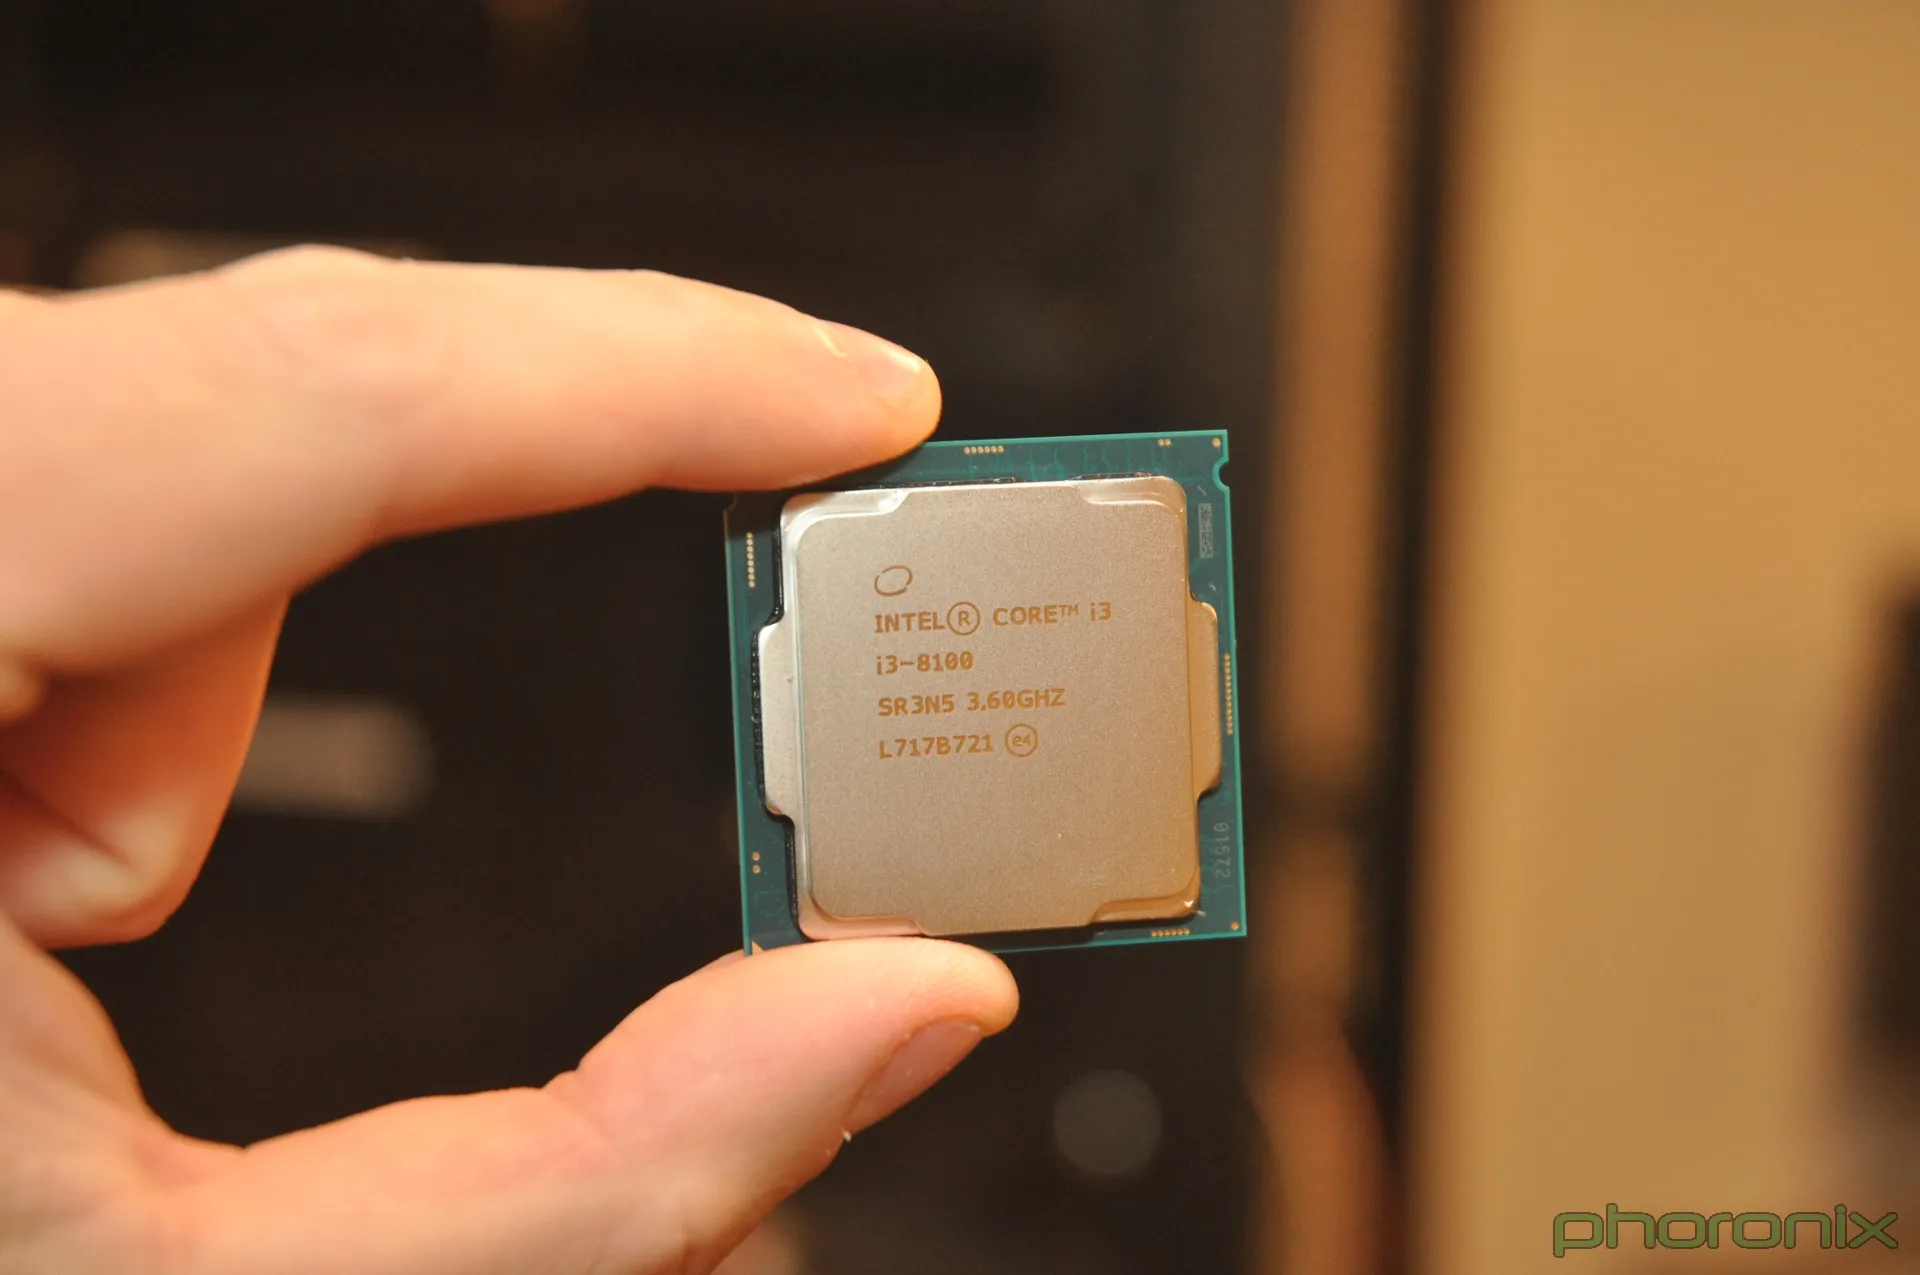 Интел 8100. Процессор Intel Core i3 8100 Box. Процессор Intel Core i3-8100 OEM. Intel(r) Core(TM) i3-8100 CPU @ 3.60GHZ. Intel Core i3 8100 3.6 ГГЦ.